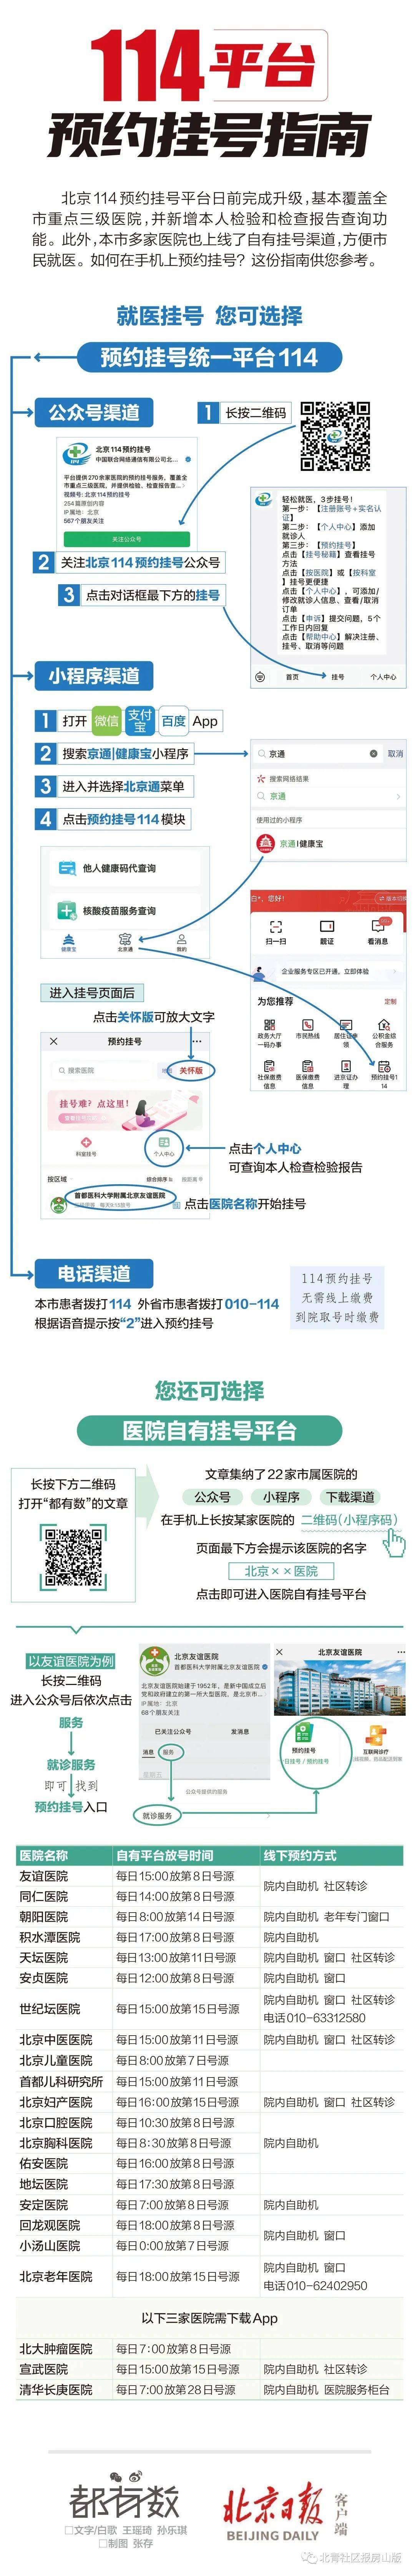 微信公众平台手机版:北京114预约挂号平台，升级了！拿手机如何抢号？一图指南——